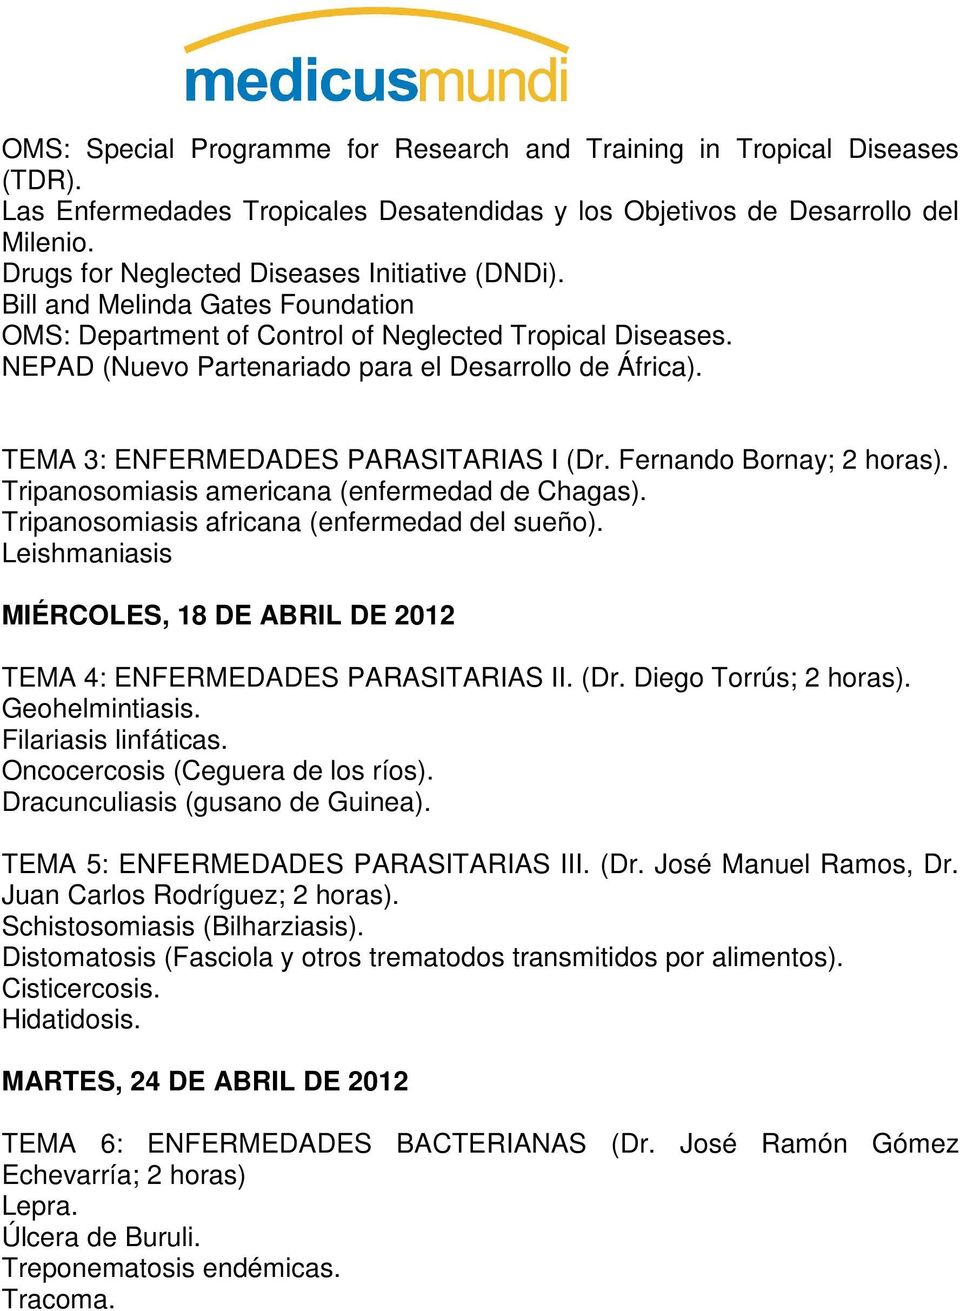 TEMA 3: ENFERMEDADES PARASITARIAS I (Dr. Fernando Bornay; 2 horas). Tripanosomiasis americana (enfermedad de Chagas). Tripanosomiasis africana (enfermedad del sueño).